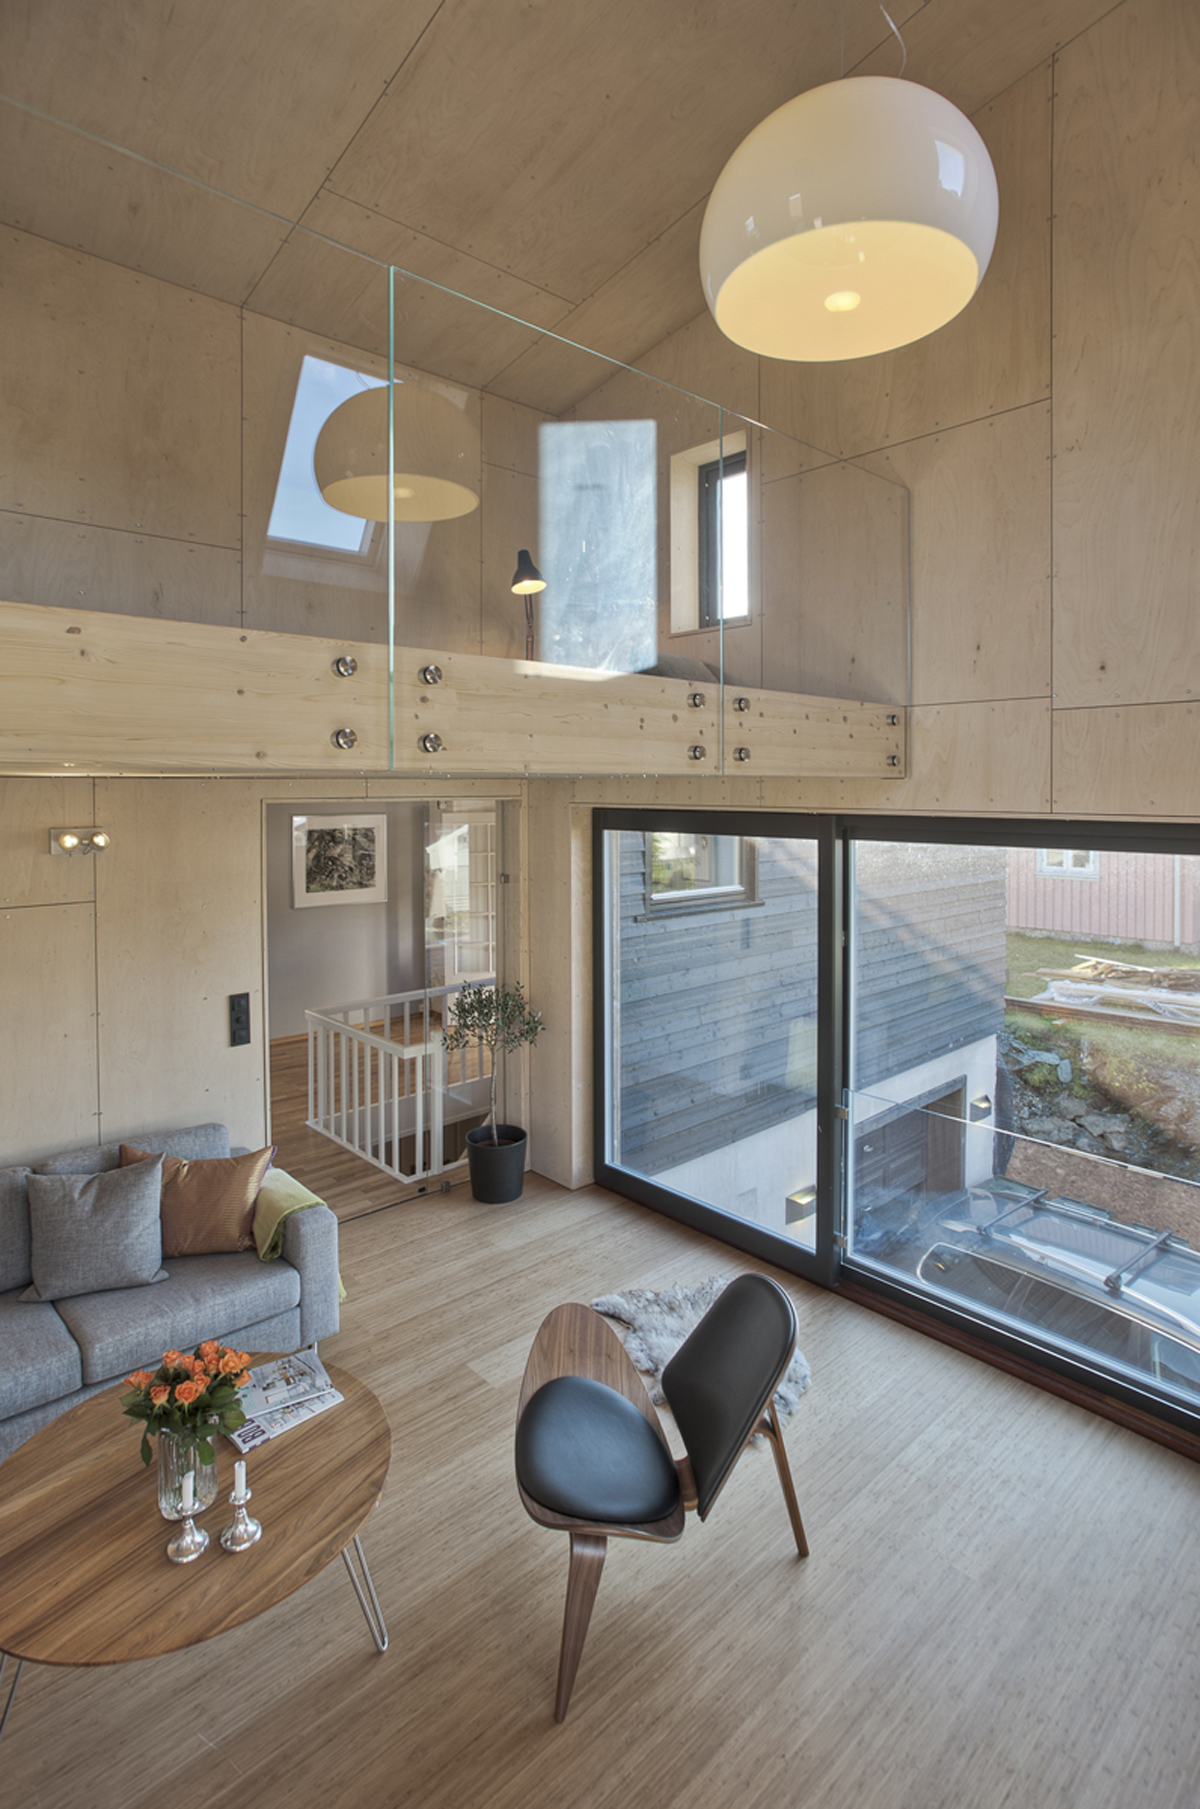 TRD Heinemann / TYIN Tegnestue Architects